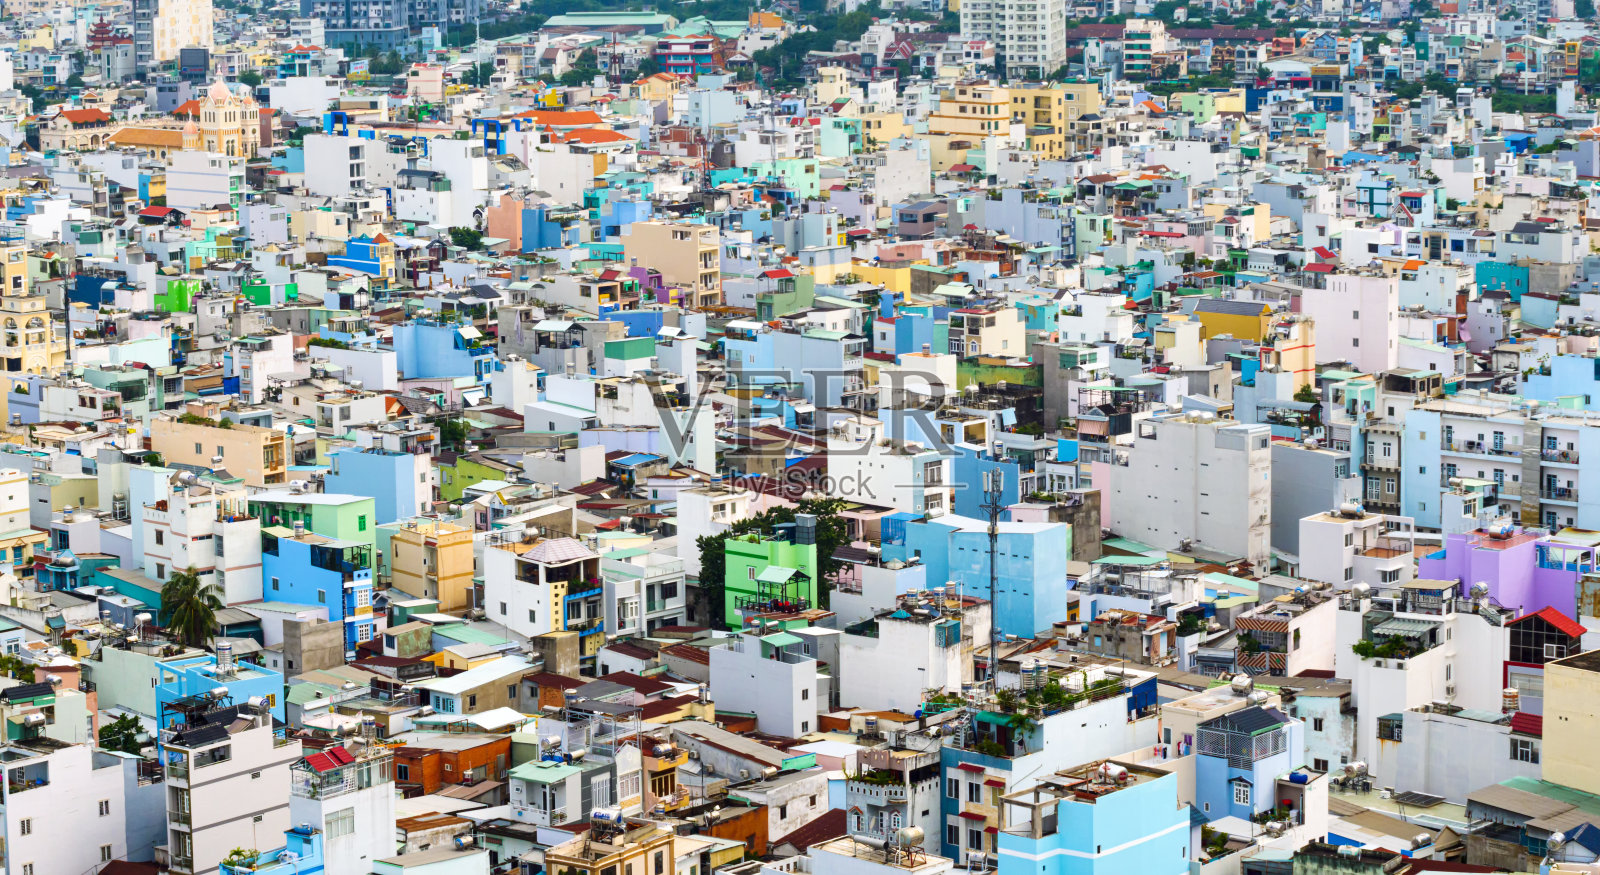 越南胡志明市- 2019年9月23日:从第四区俯瞰胡志明市的发展建筑和交通全景。越南是世界上增长最快的国家。照片摄影图片